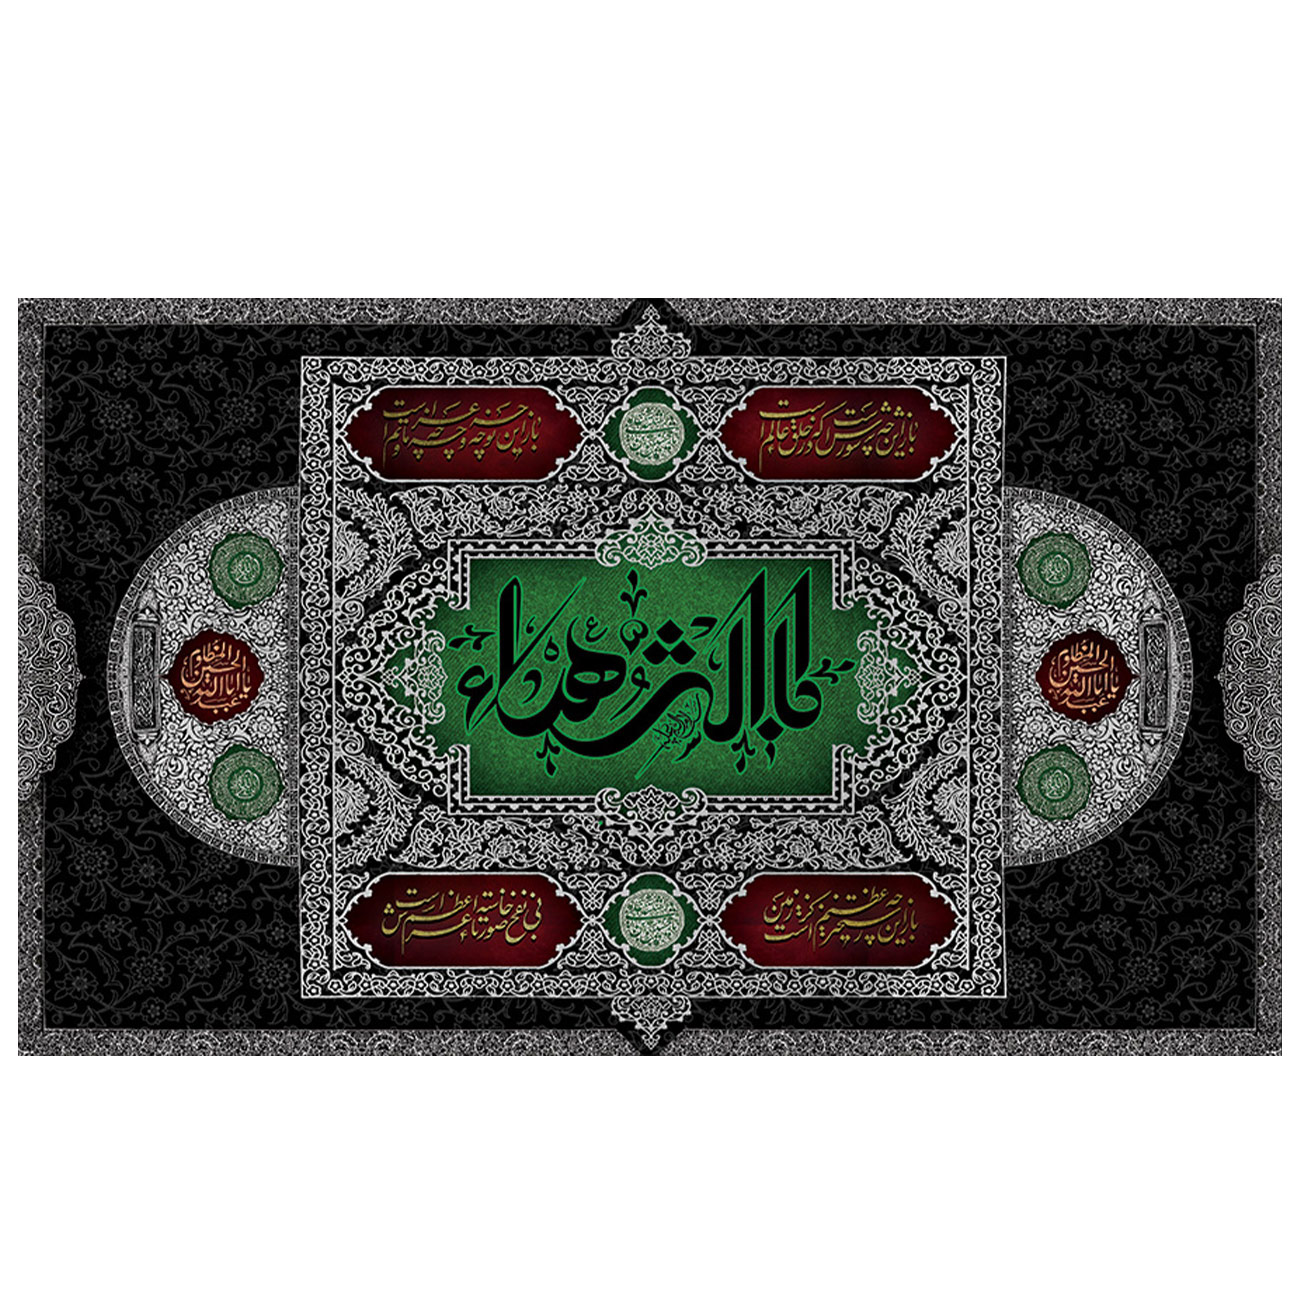  پرچم طرح مذهبی برای شهادت مدل حضرت فاطمه کد 2104D